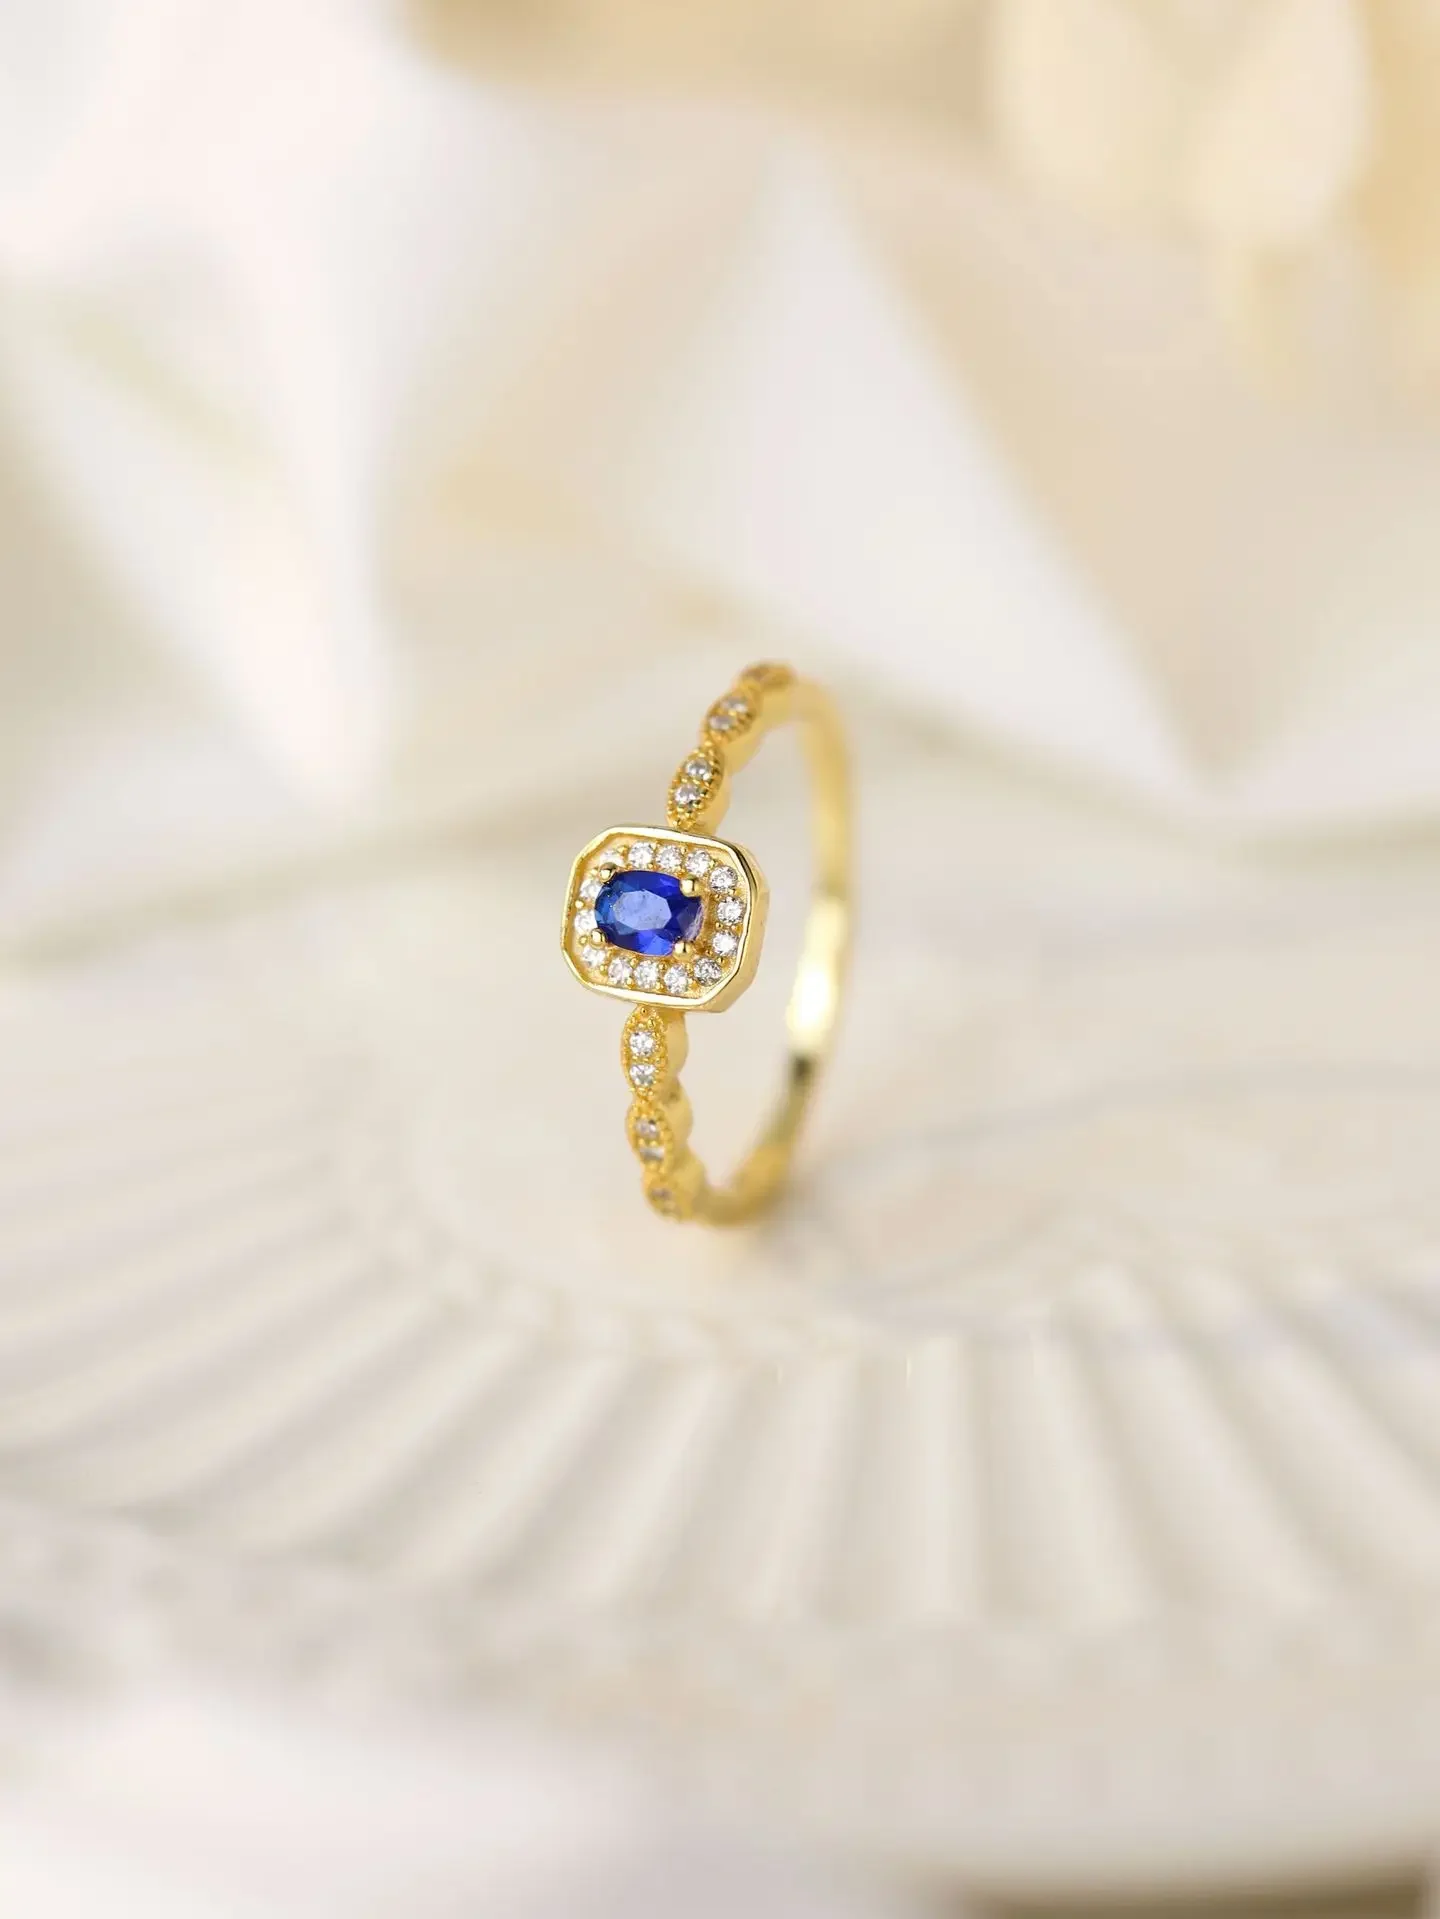 

Новое серебряное кольцо Farny из стерлингового серебра 925 пробы с сияющим цирконием и сапфиром в очаровательном винтажном стиле как кольцо для женщин